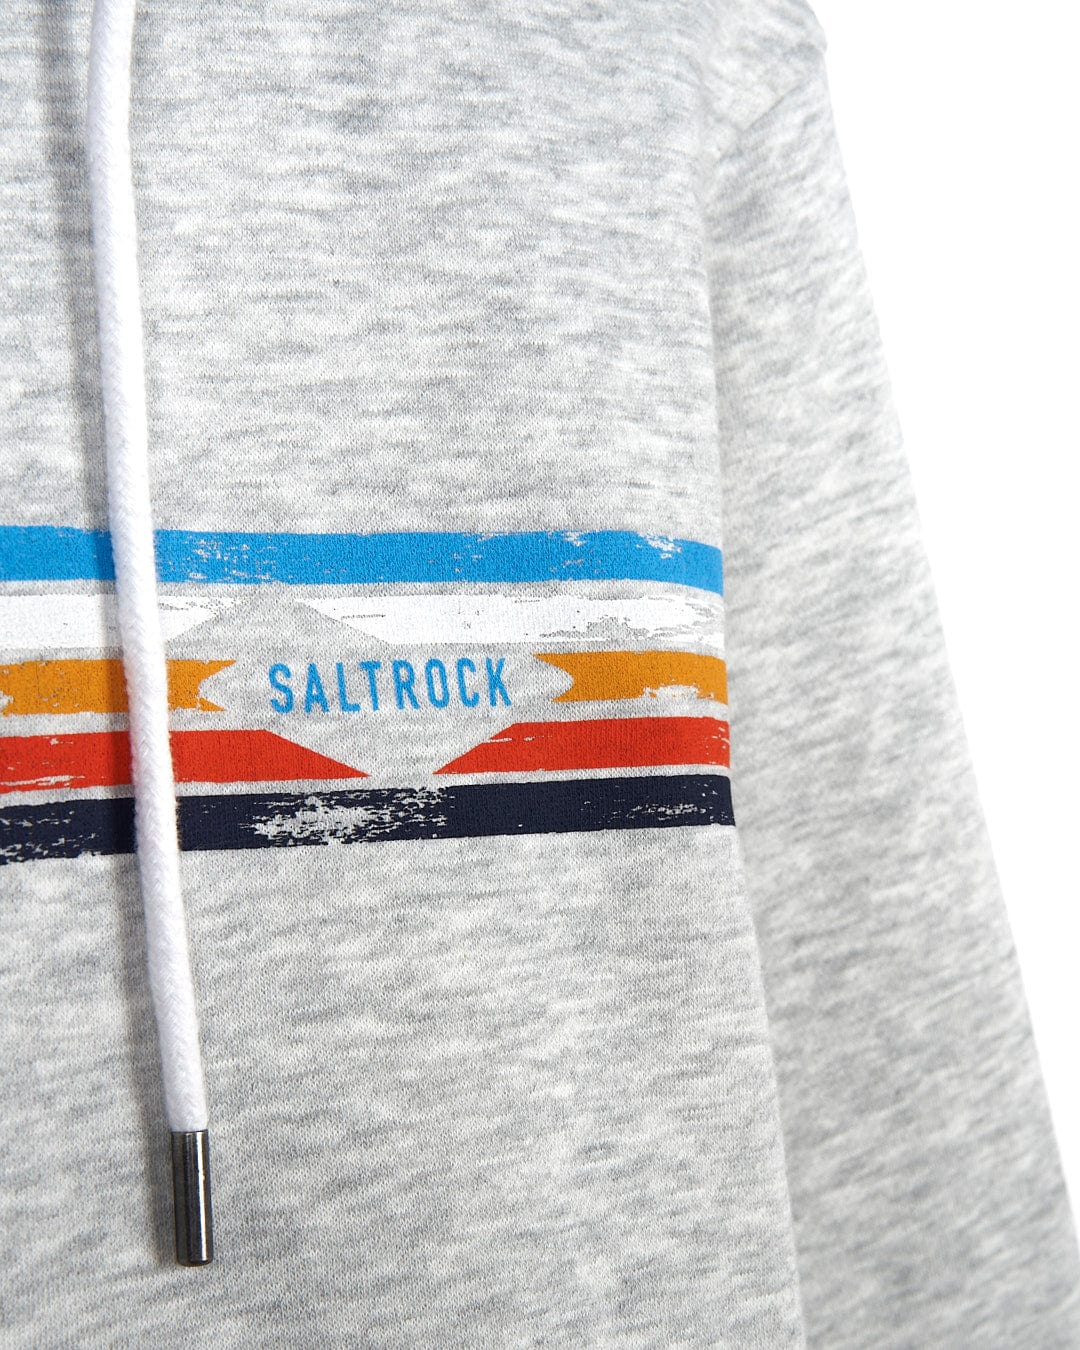 A Taped Stripe - Mens Zip Hoodie with Saltrock branding on it.